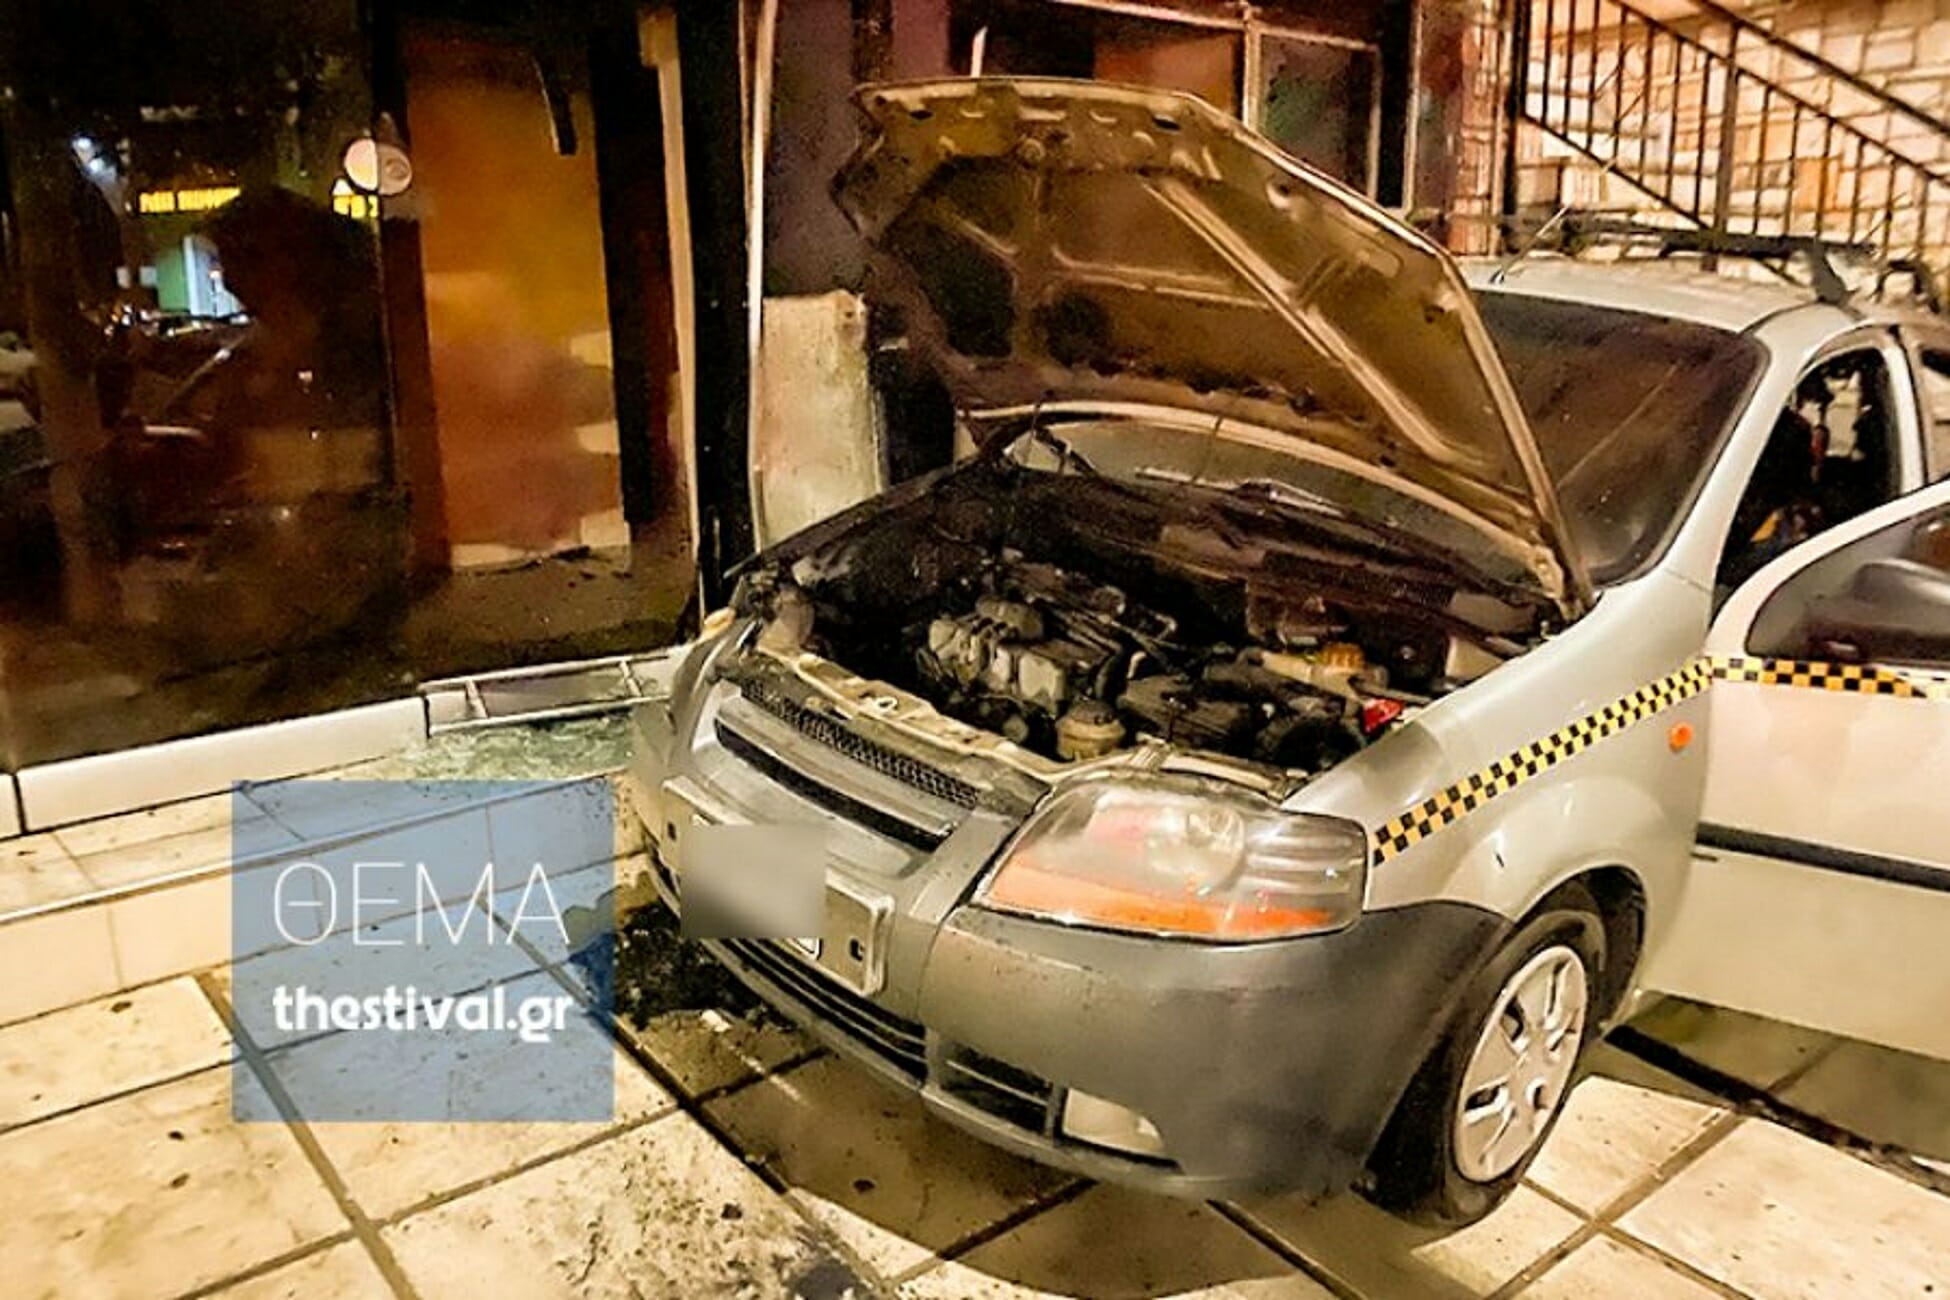 Θεσσαλονίκη: Πυρπόλησαν τα αυτοκίνητα εταιρείας σεκιούριτι! Έτσι έβαλαν οι δράστες τη φωτιά (Βίντεο)